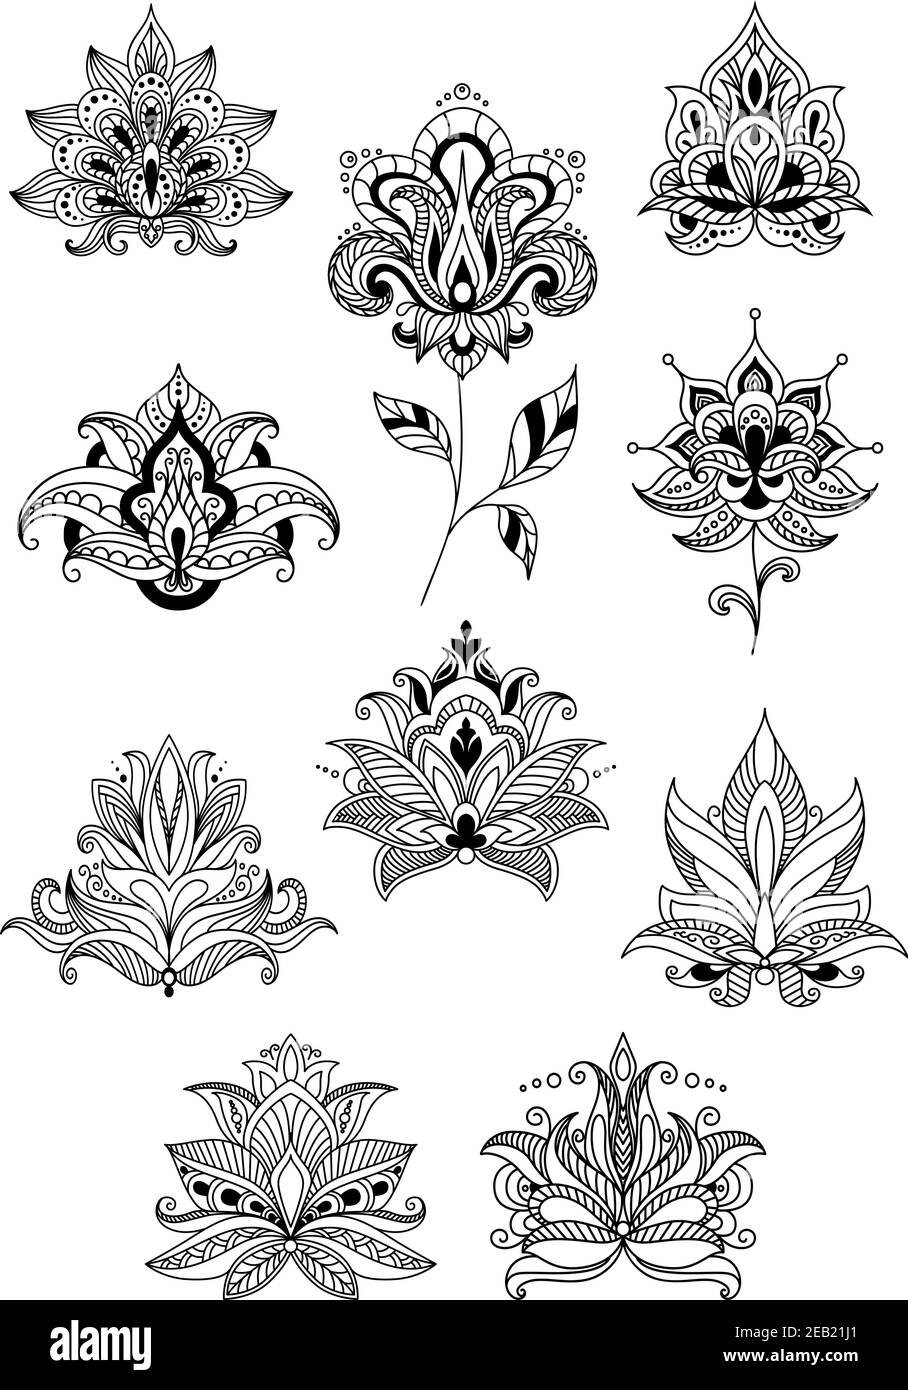 Indische, persische und türkische Paisley-Blumen in Outline-Stil für Design und reich verzierten floralen Ornamenten oder Mustern gesetzt Stock Vektor